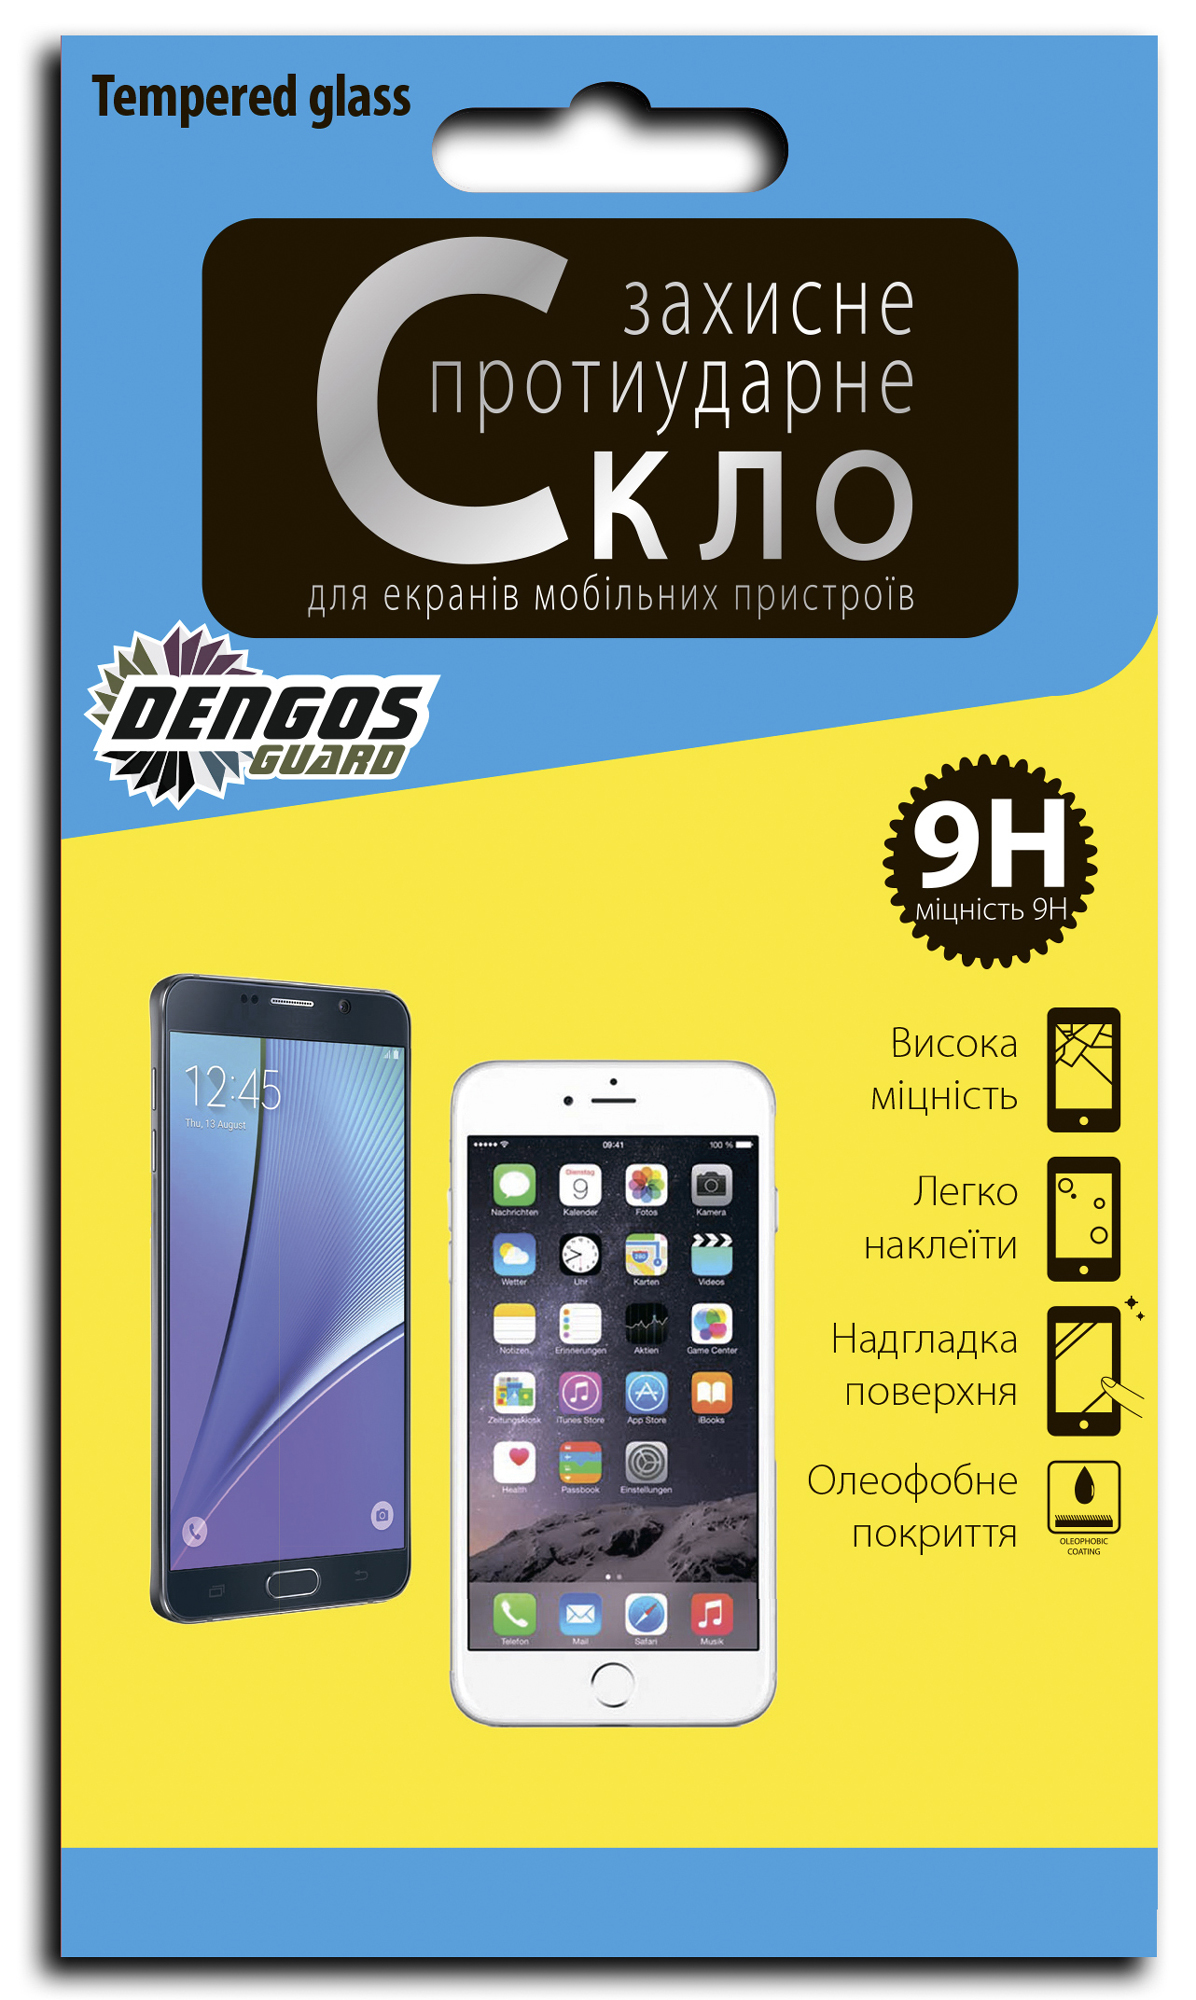 Защитное стекло DENGOS 2.5D для Samsung Galaxy А3 2017 (А320) (TG-103) в Киеве